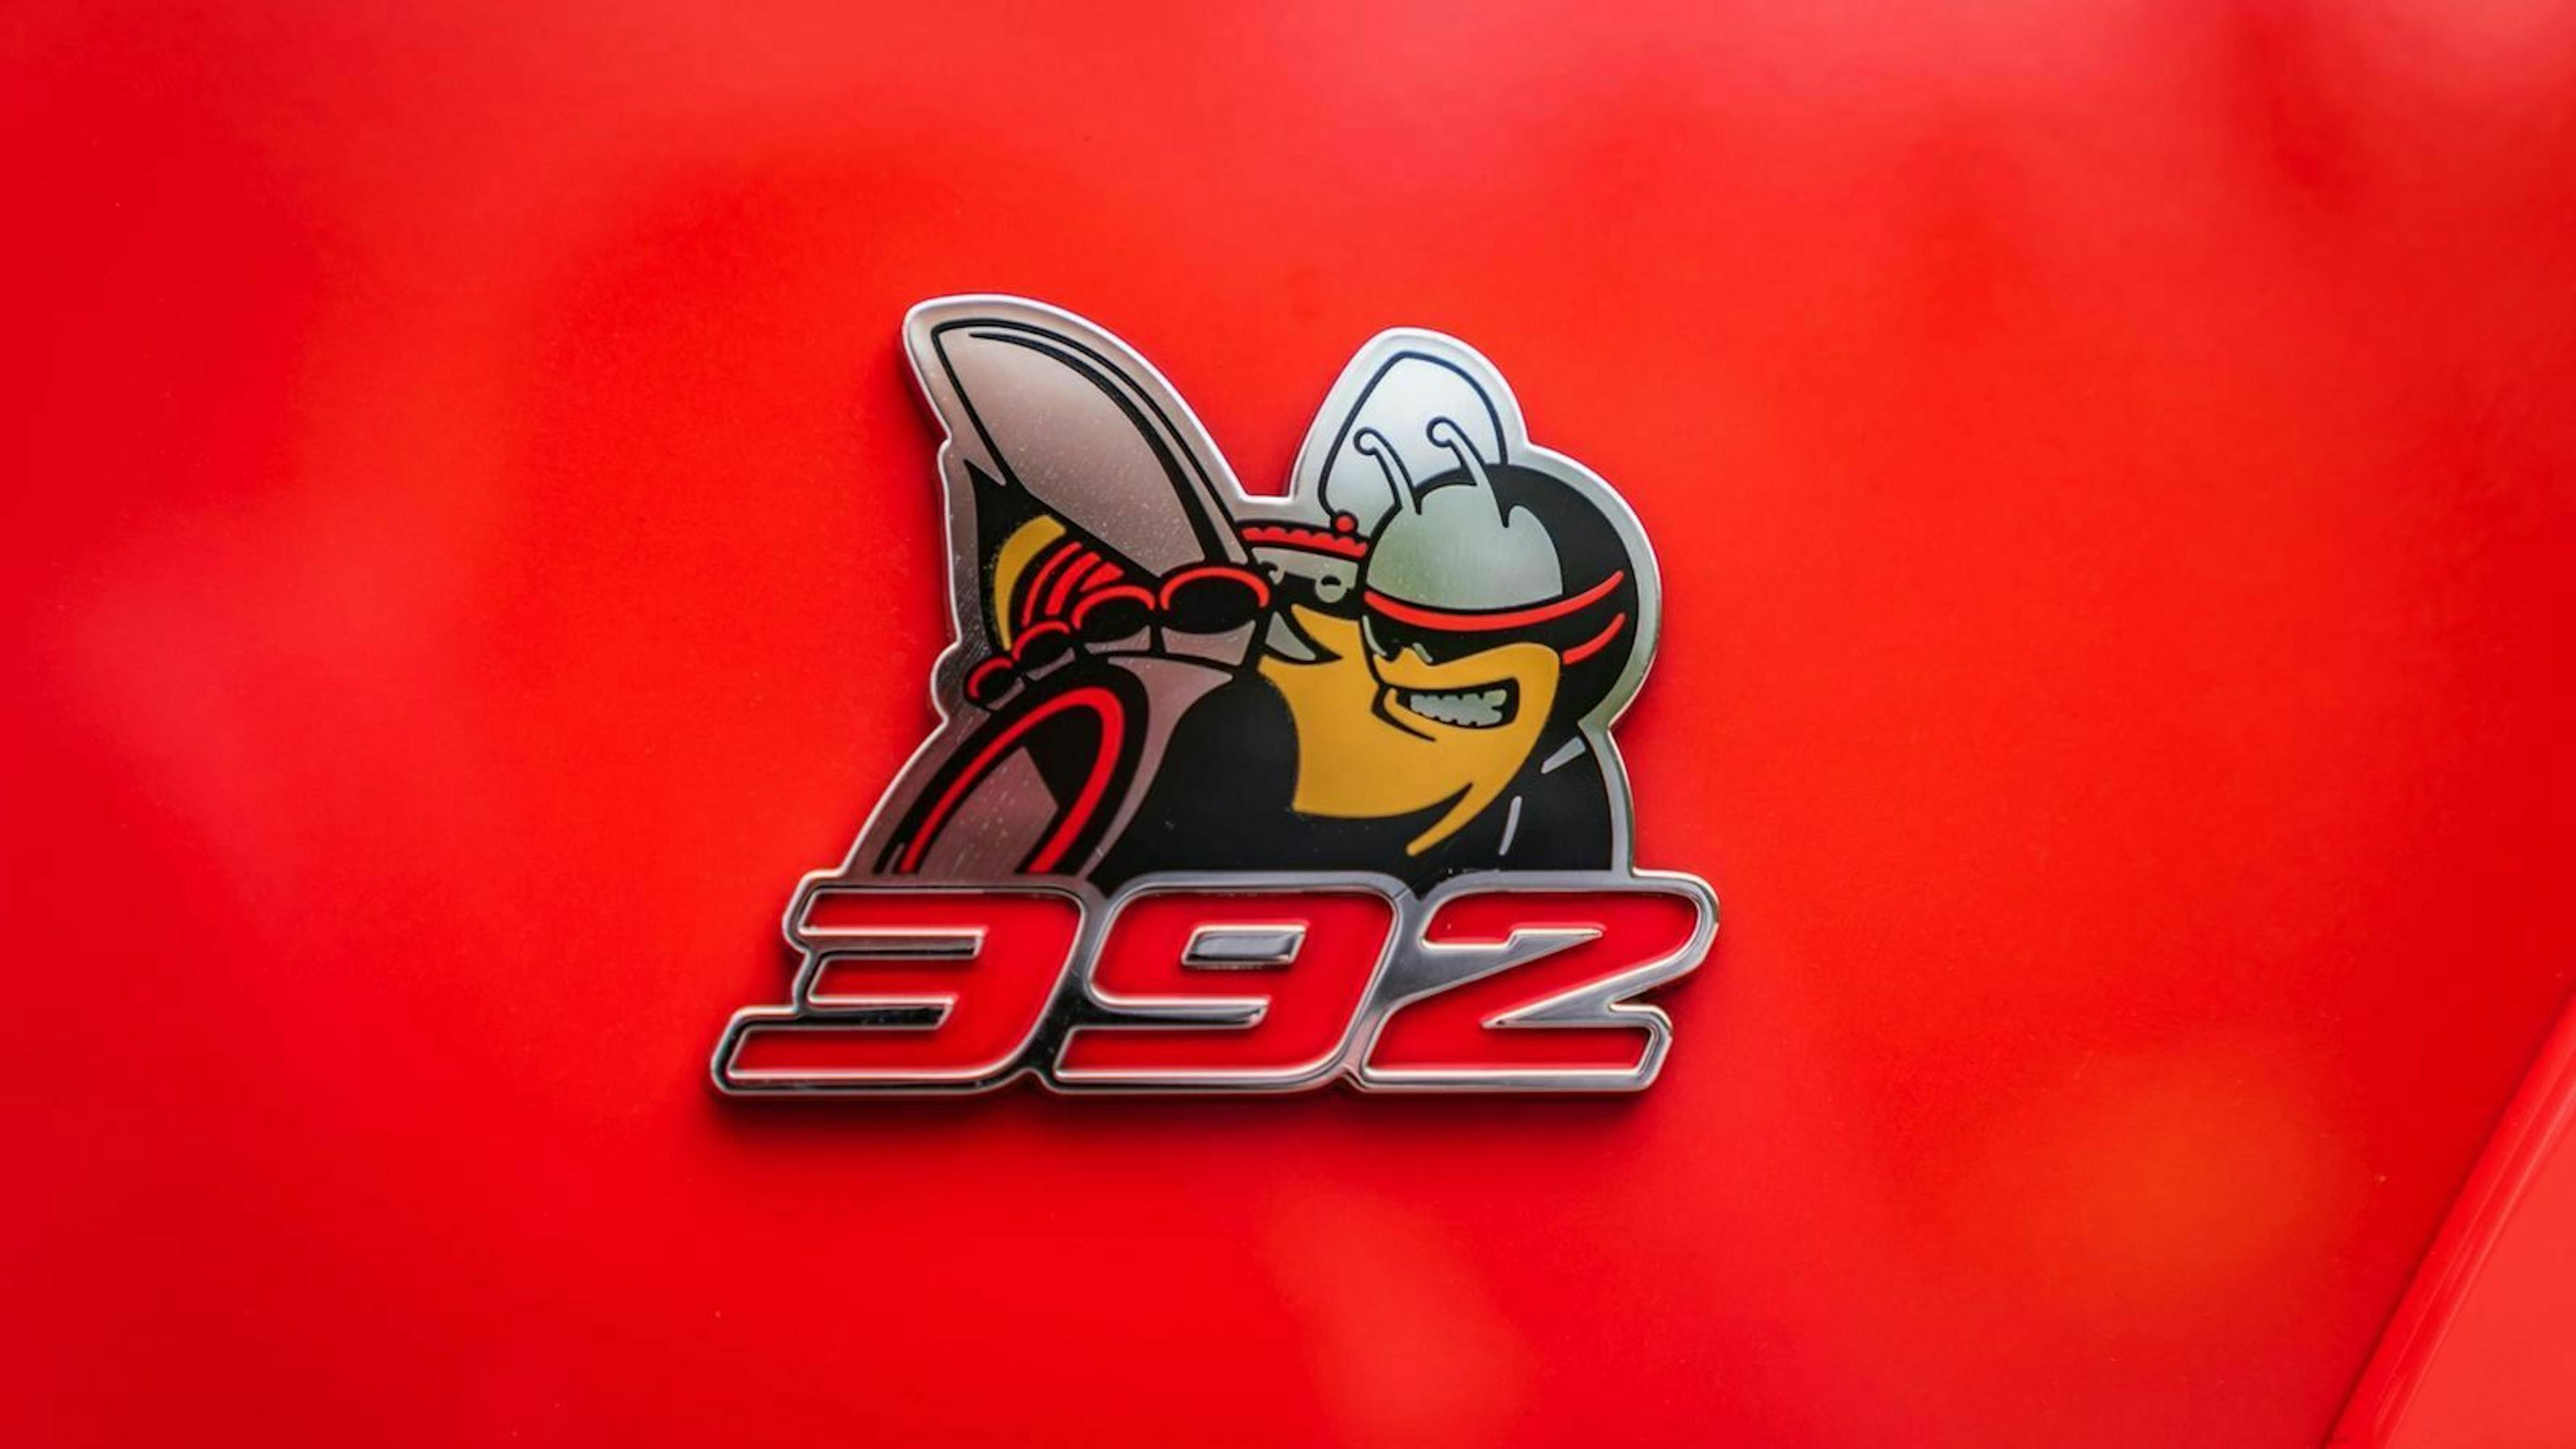 Dodge Challenger 392 Emblem